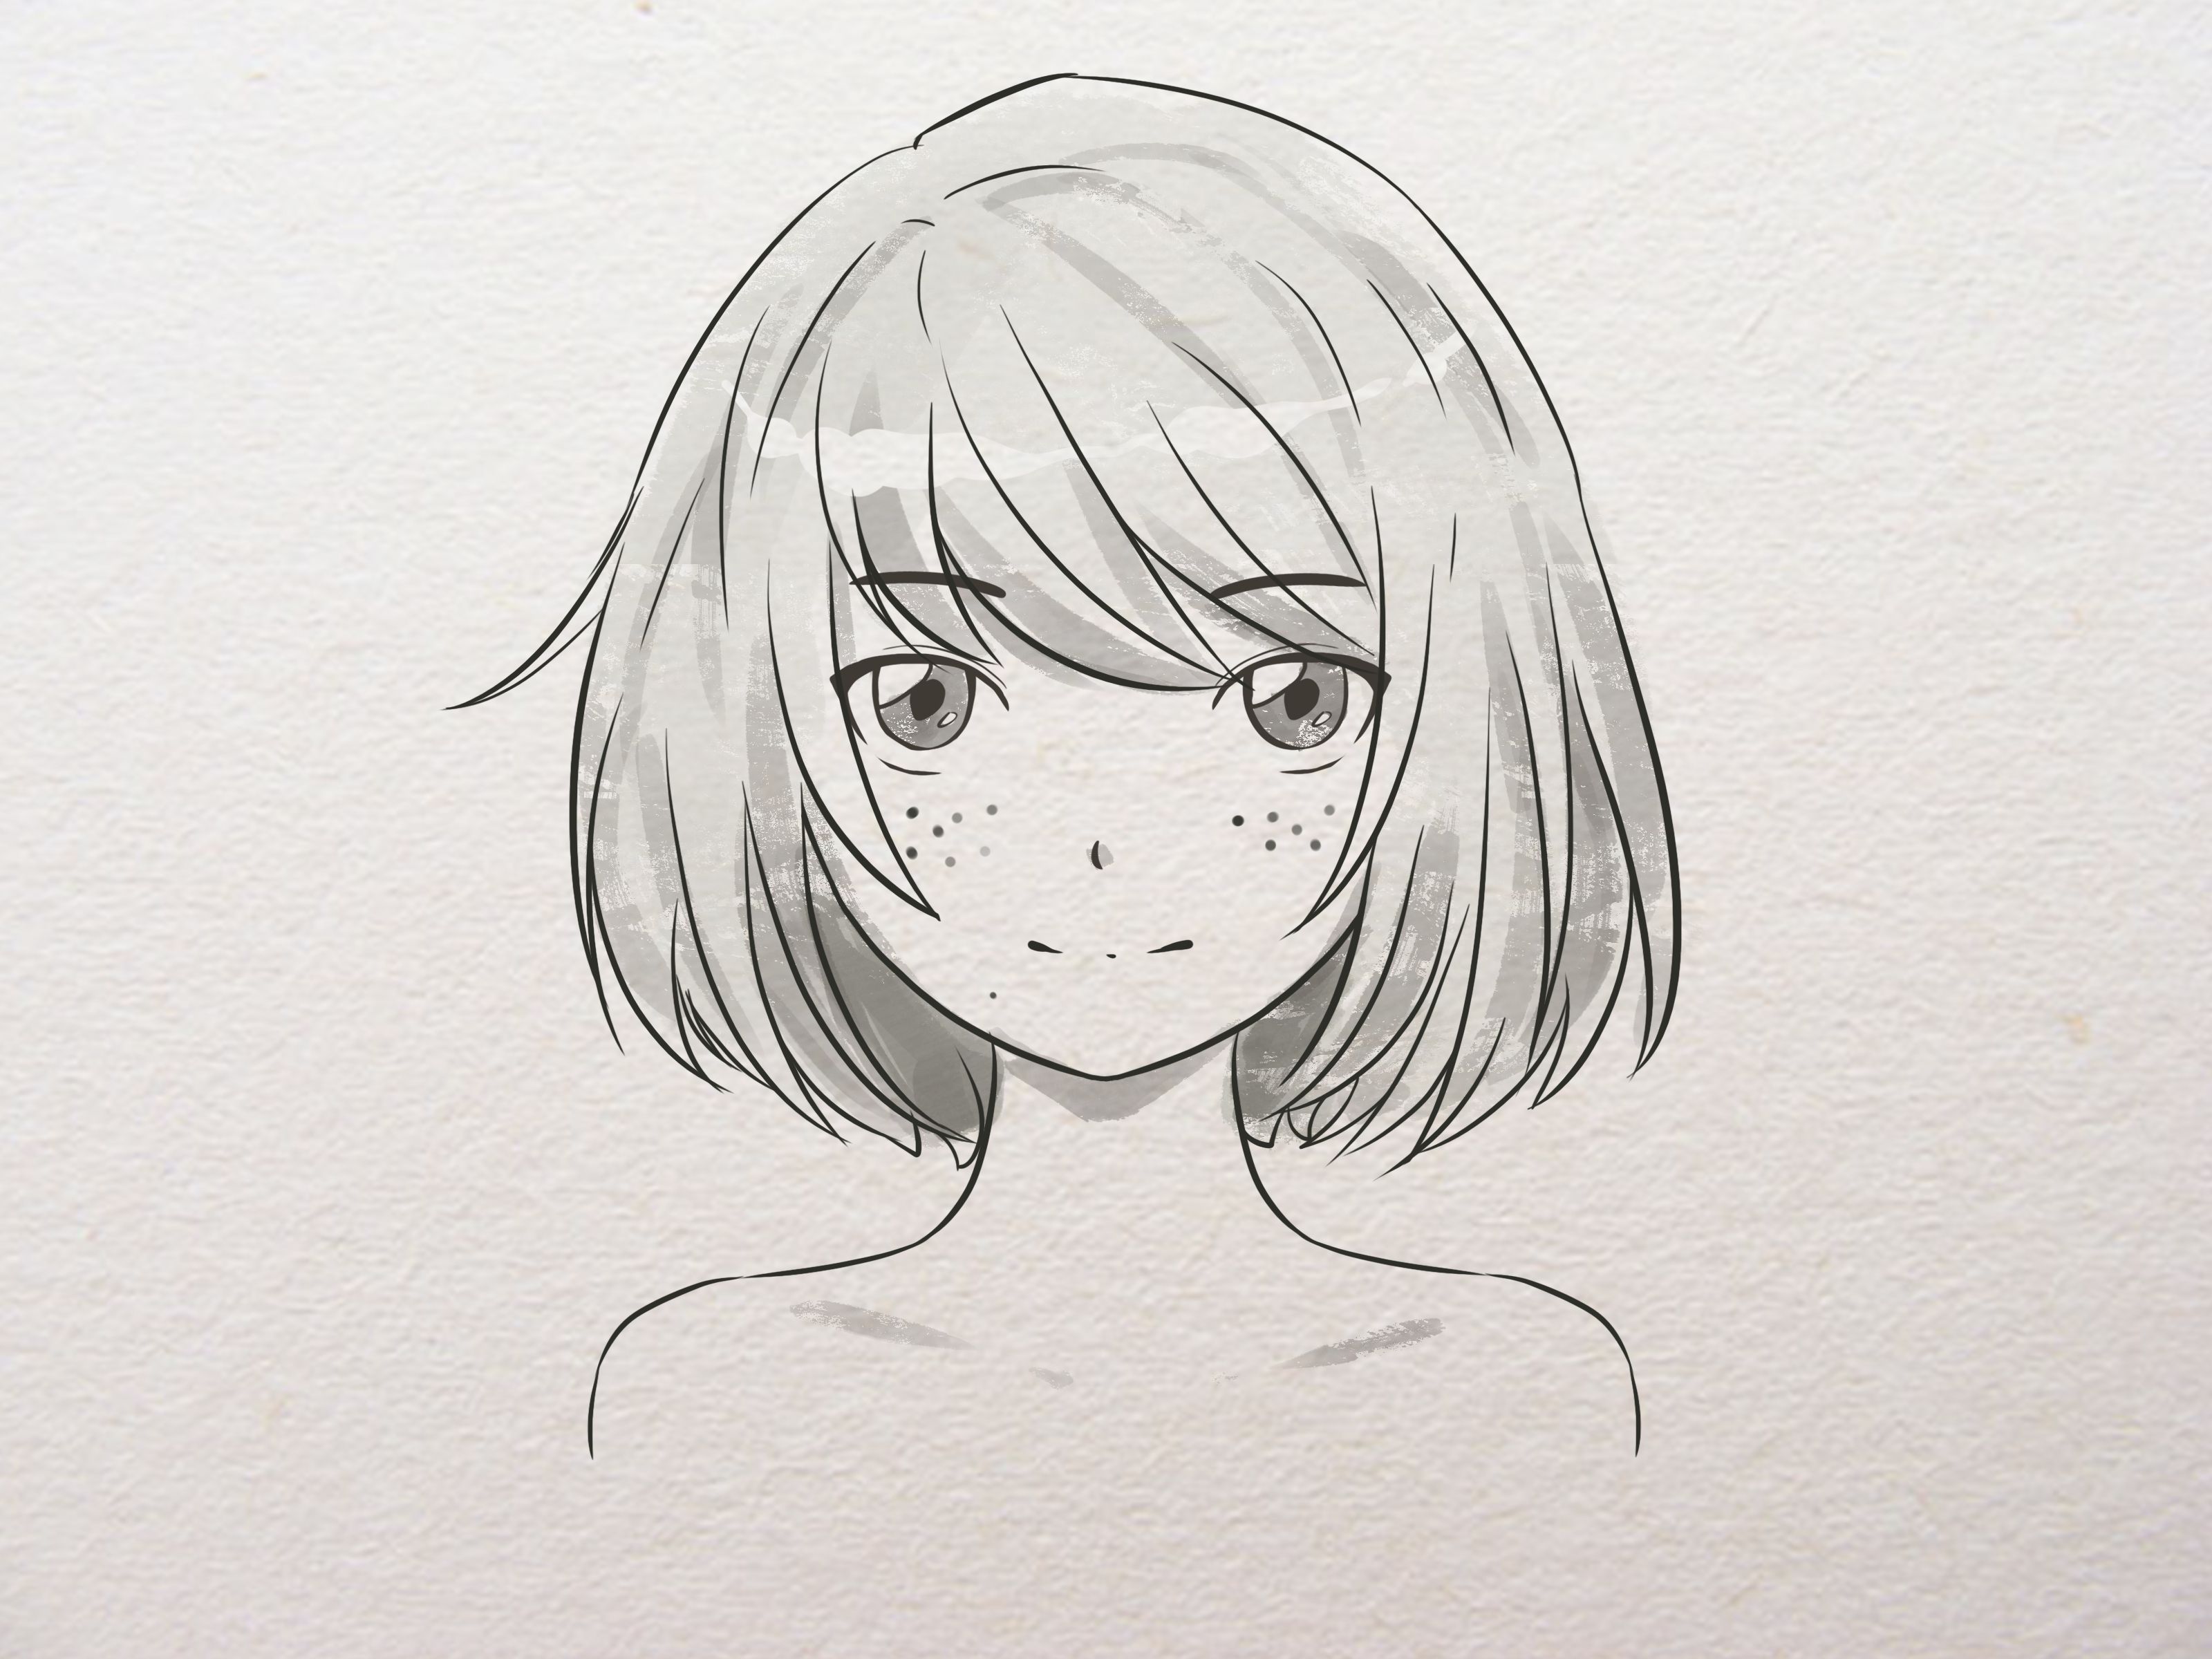 Hướng dẫn vẽ anime đơn giản từng bước Anya Forger trong SpyxFamily   Tutorial drawing Anya easy  YouTube